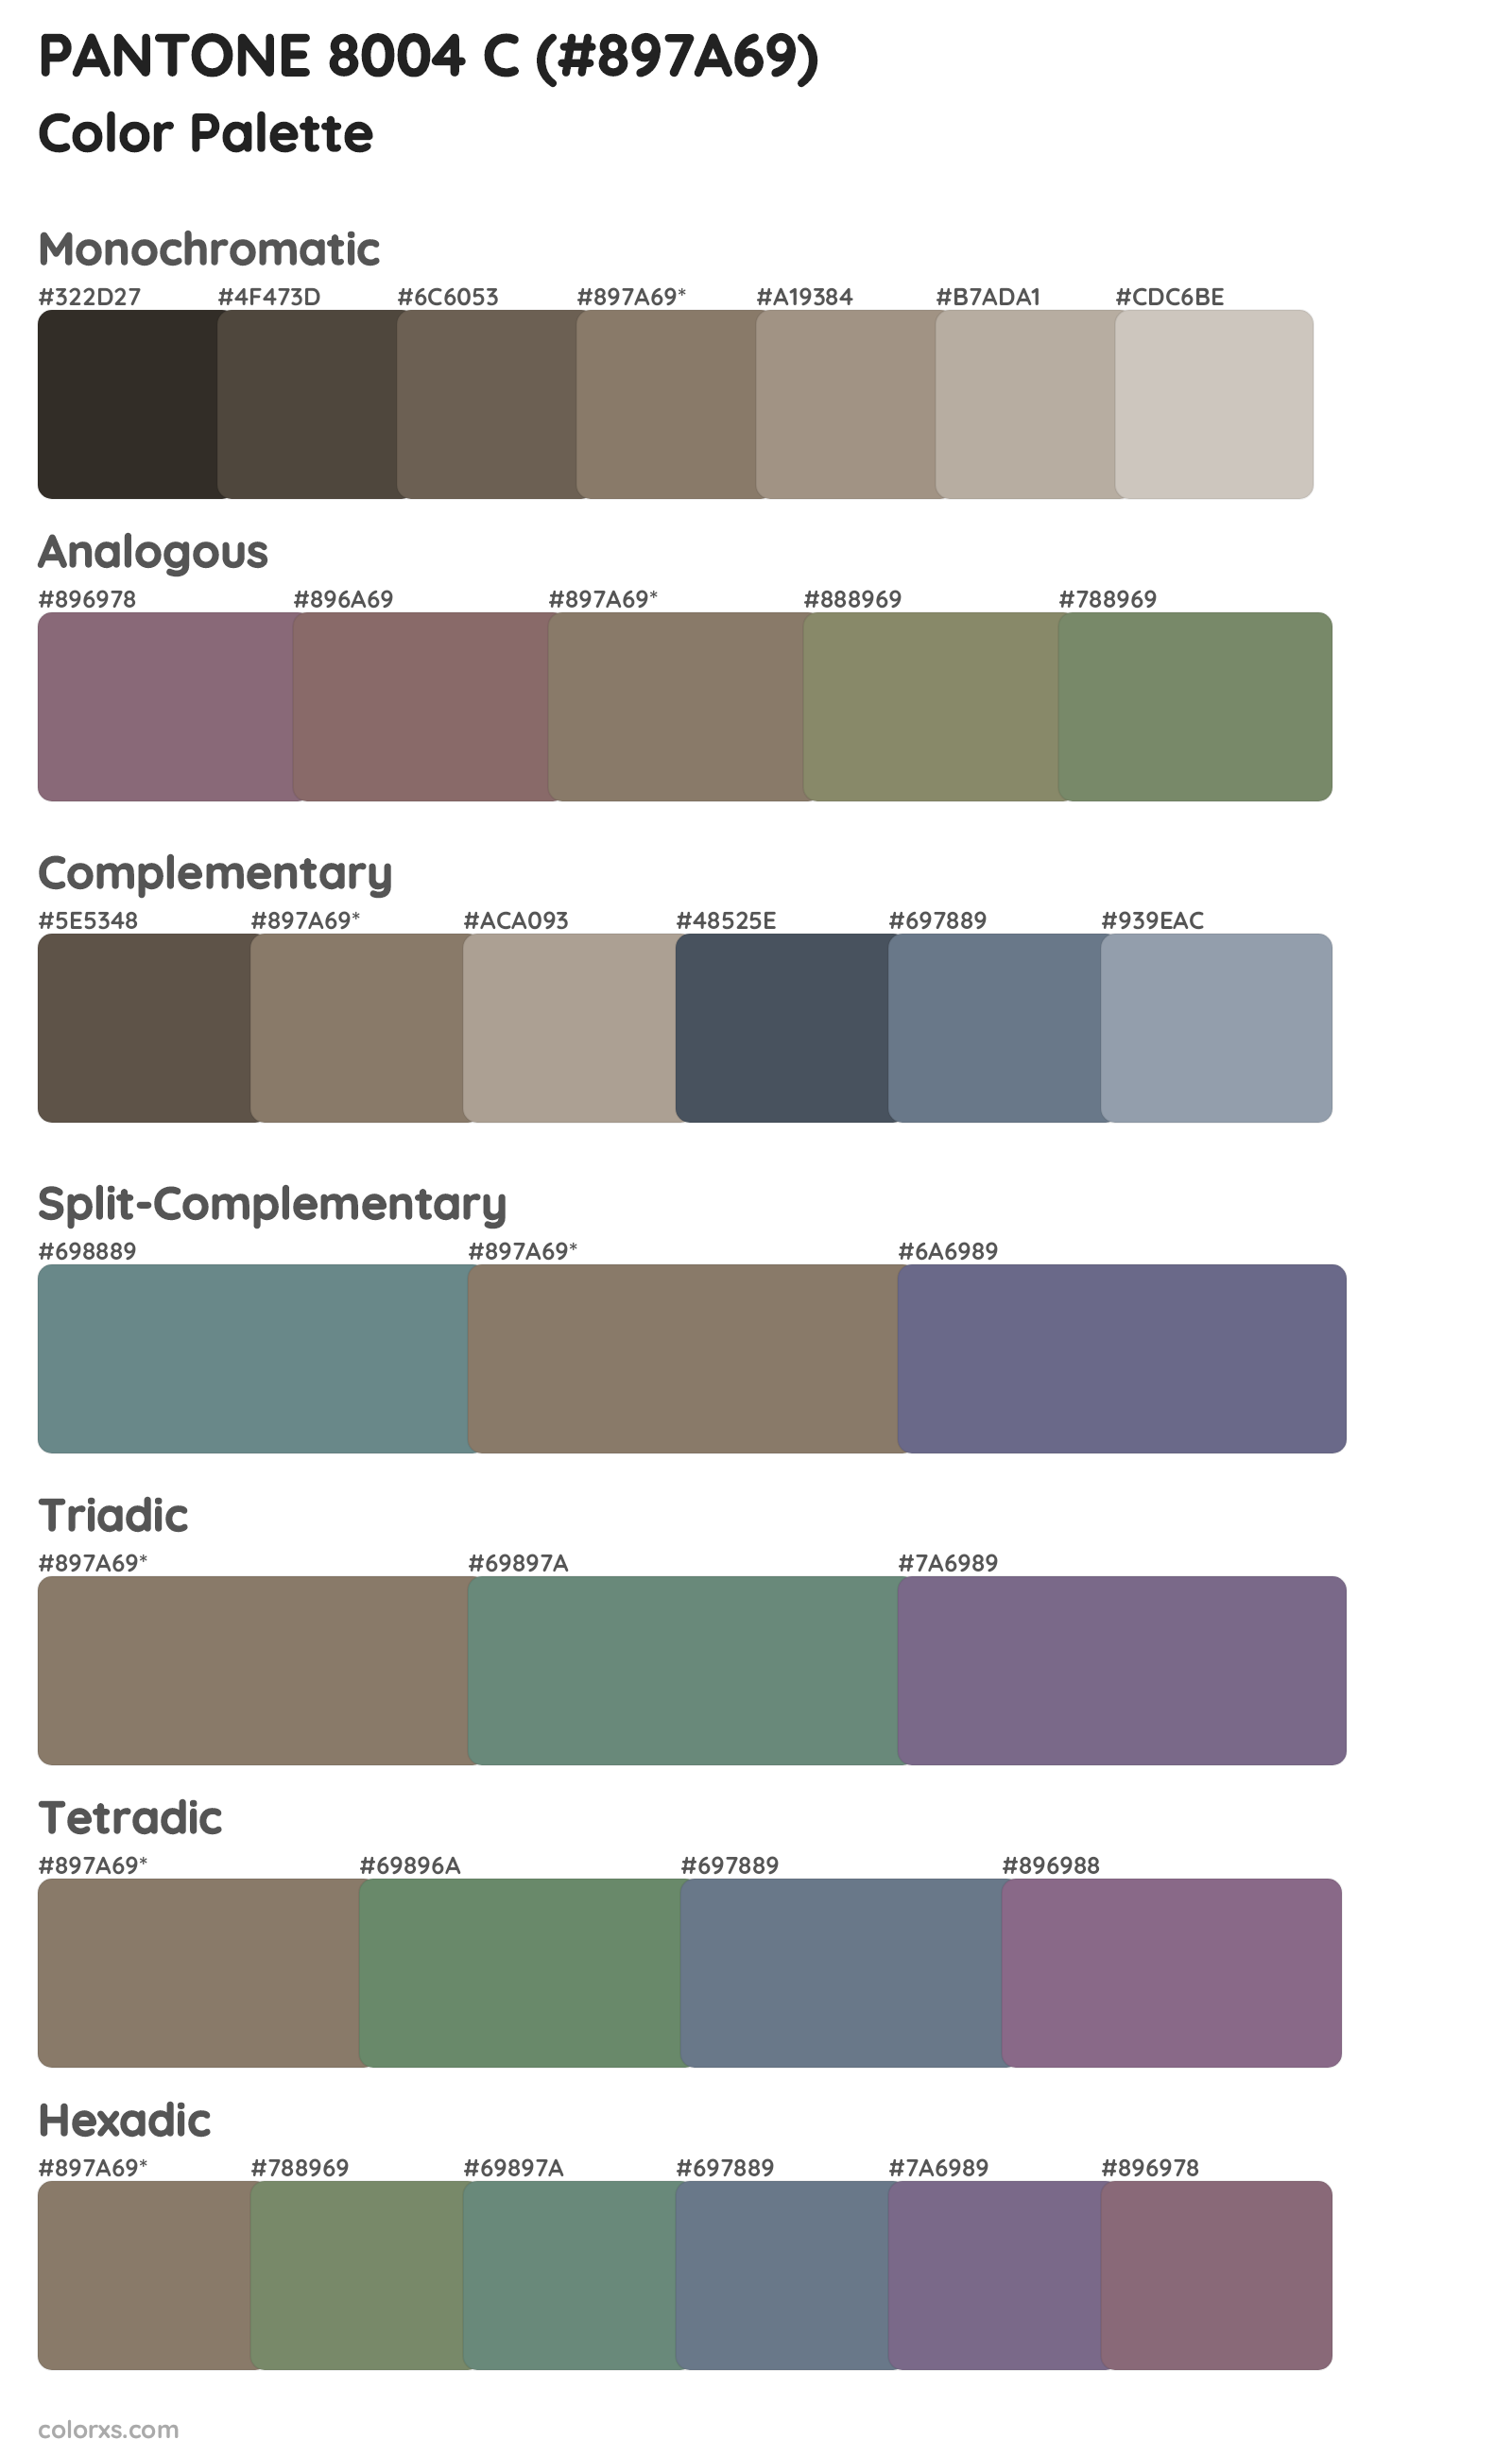 PANTONE 8004 C Color Scheme Palettes